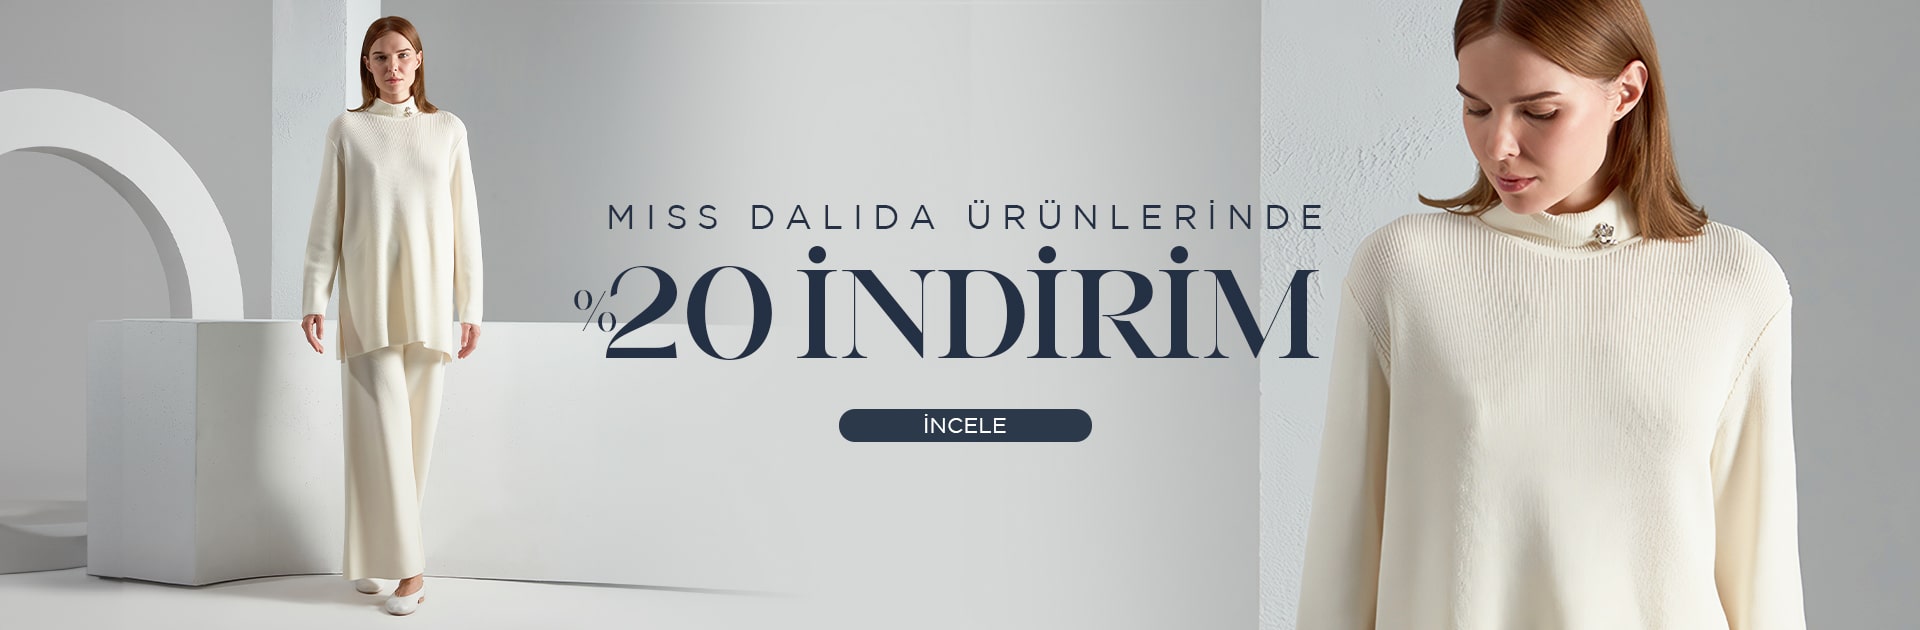 Miss Dalida